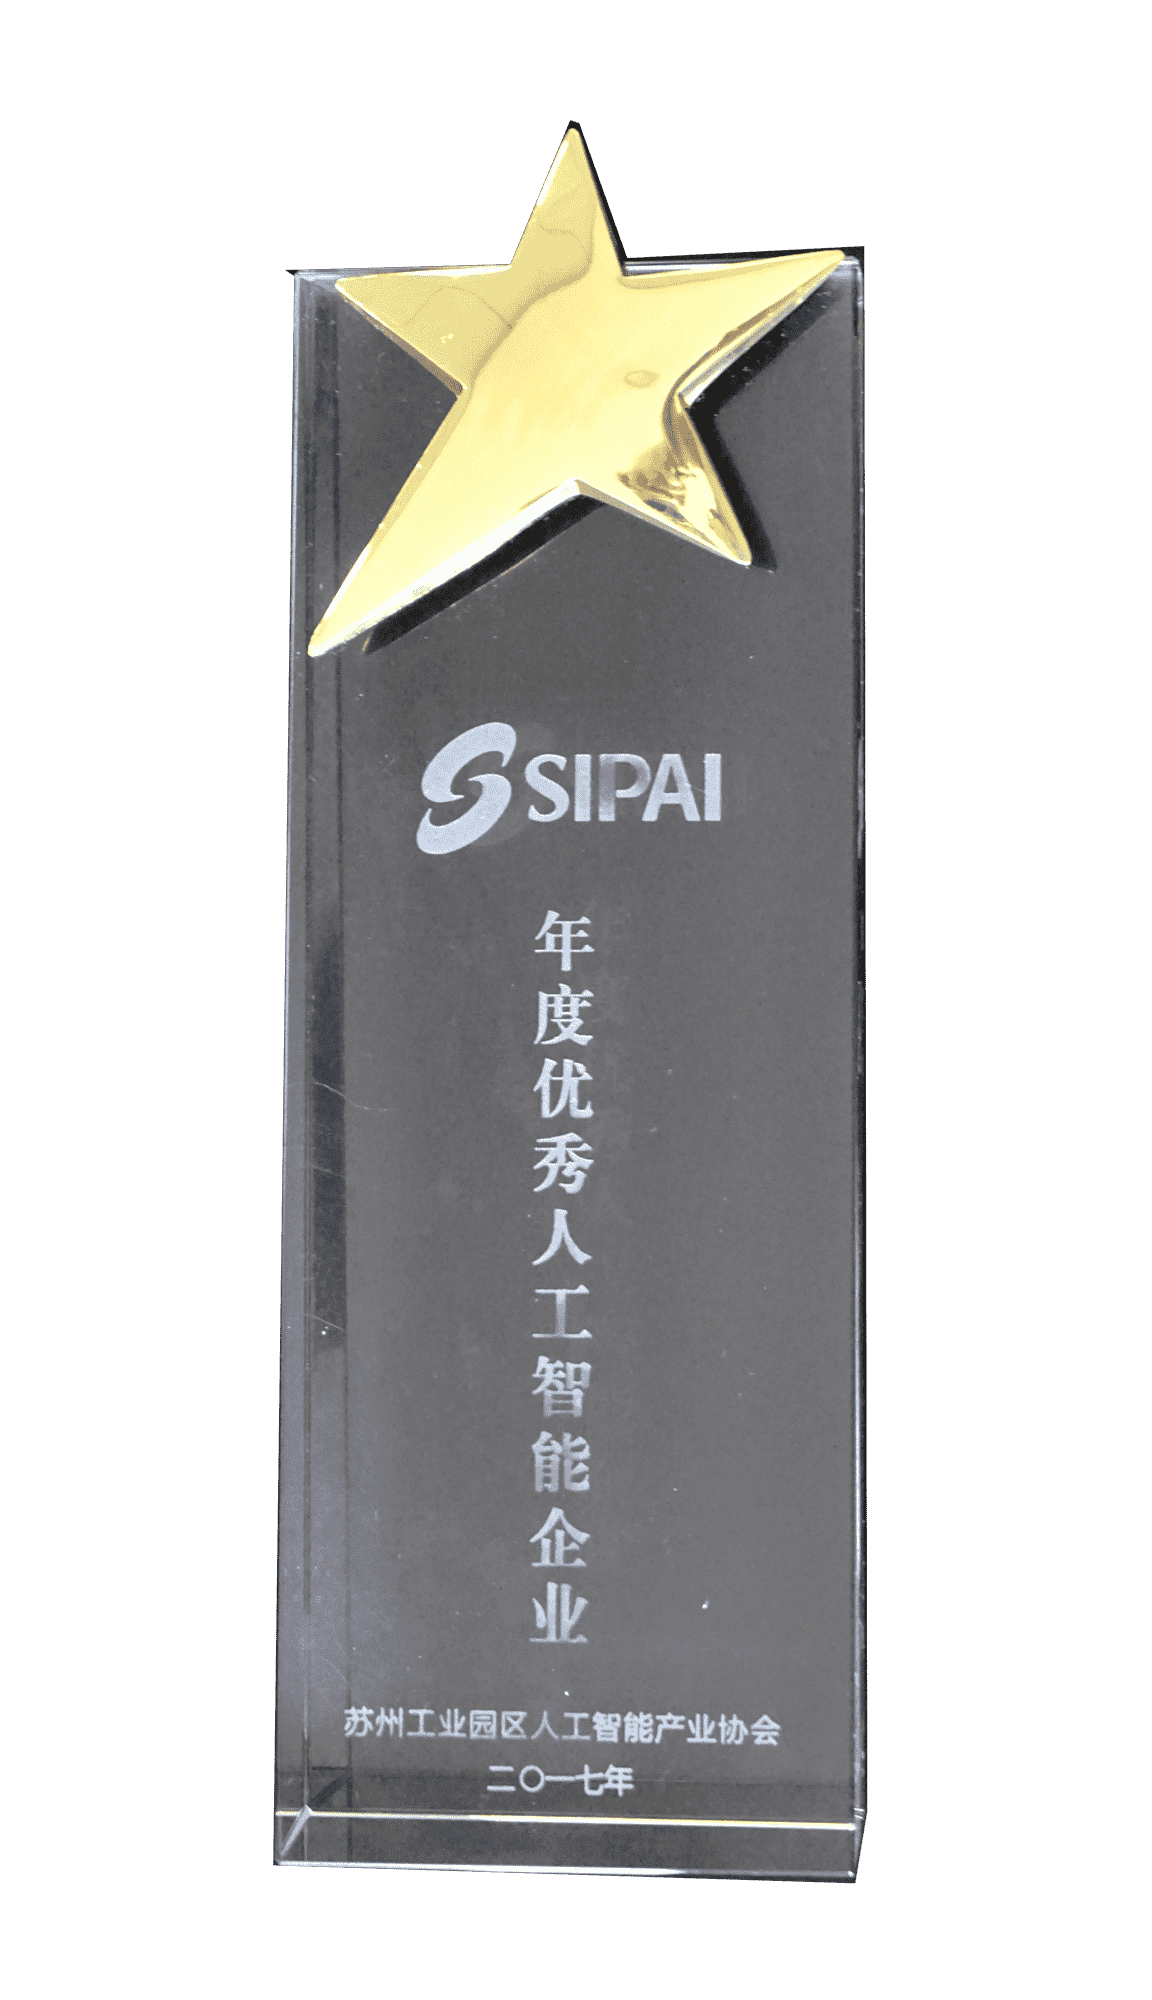 2017年度SIPAI年度优秀人工智能企业奖